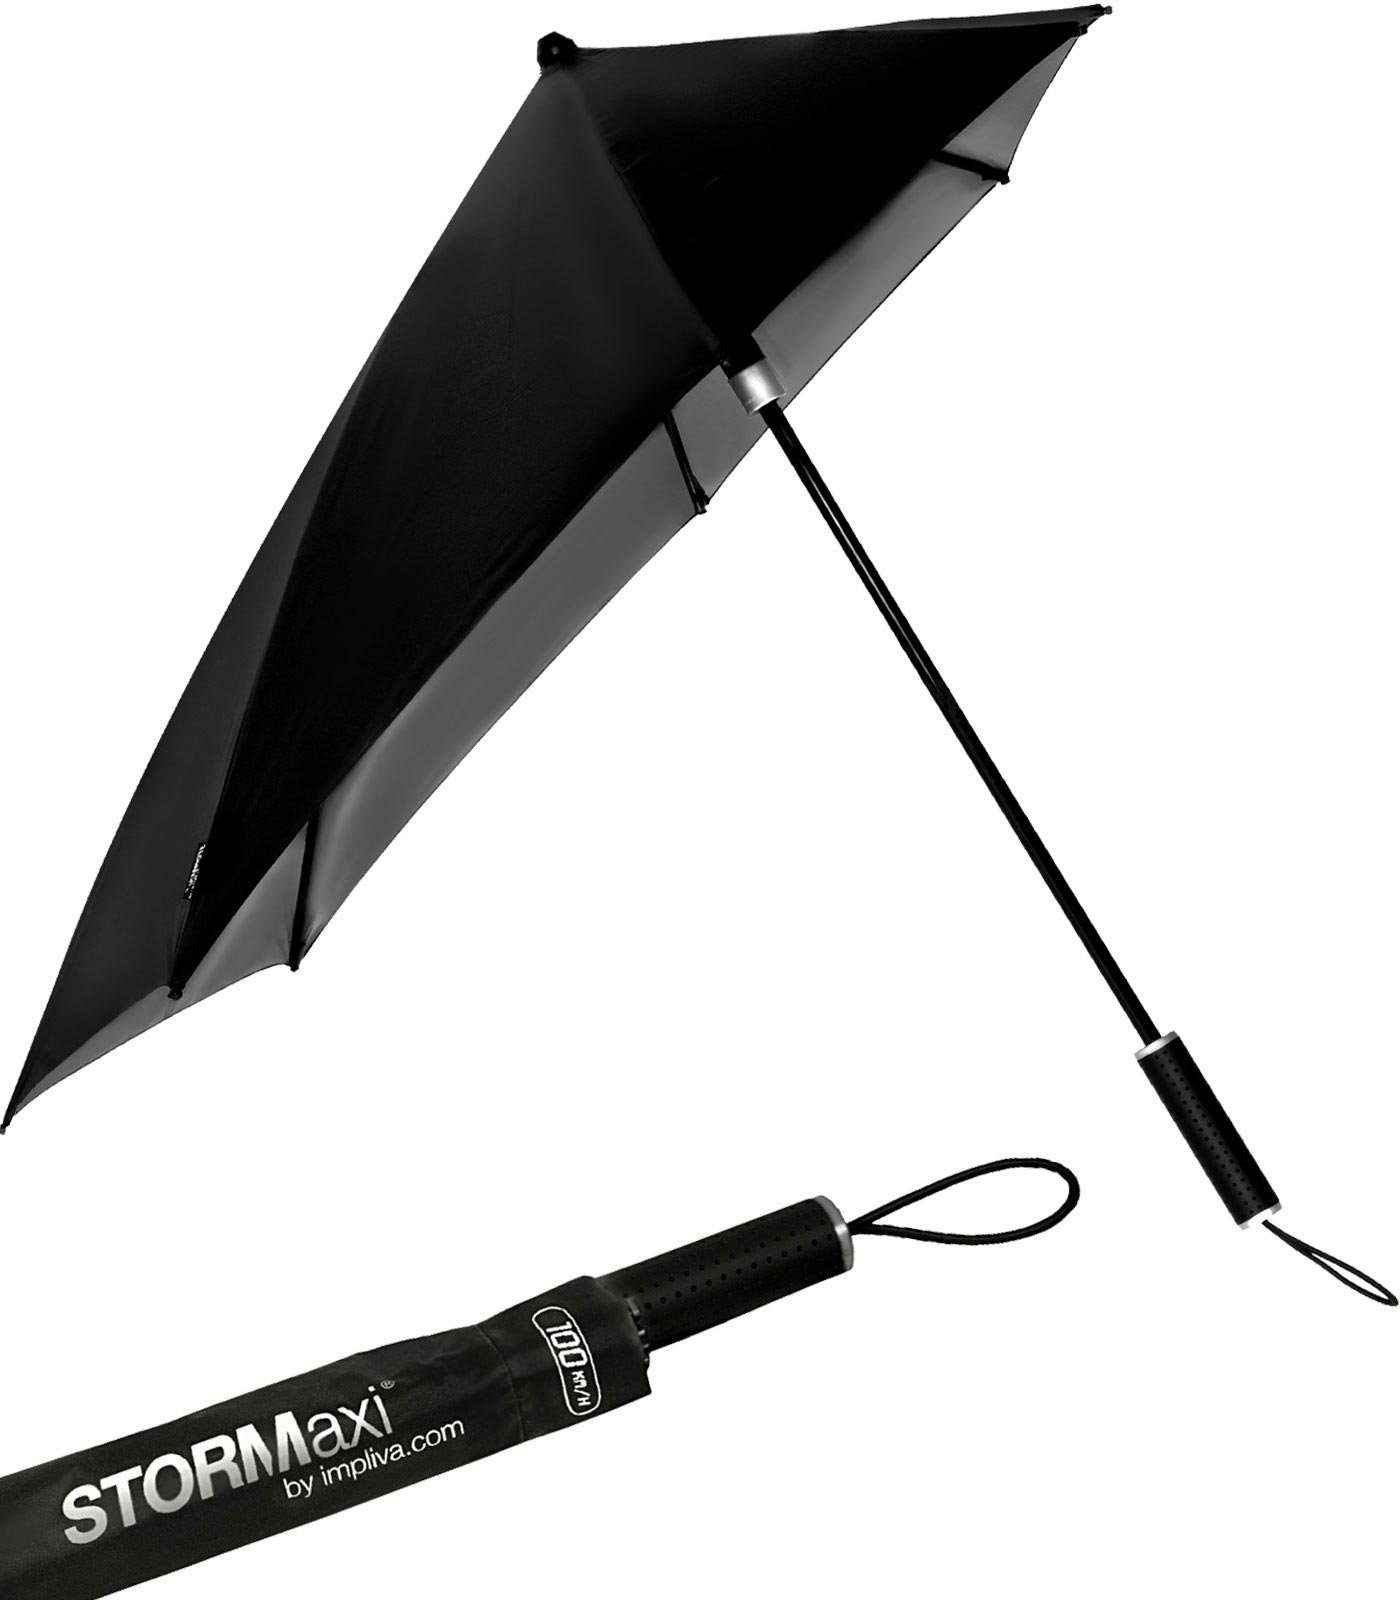 Impliva Stockregenschirm STORMaxi aerodynamischer Sturmschirm Metallic, durch seine besondere Form dreht sich der Schirm in den Wind, hält bis zu 80 km/h aus schwarz-nickel